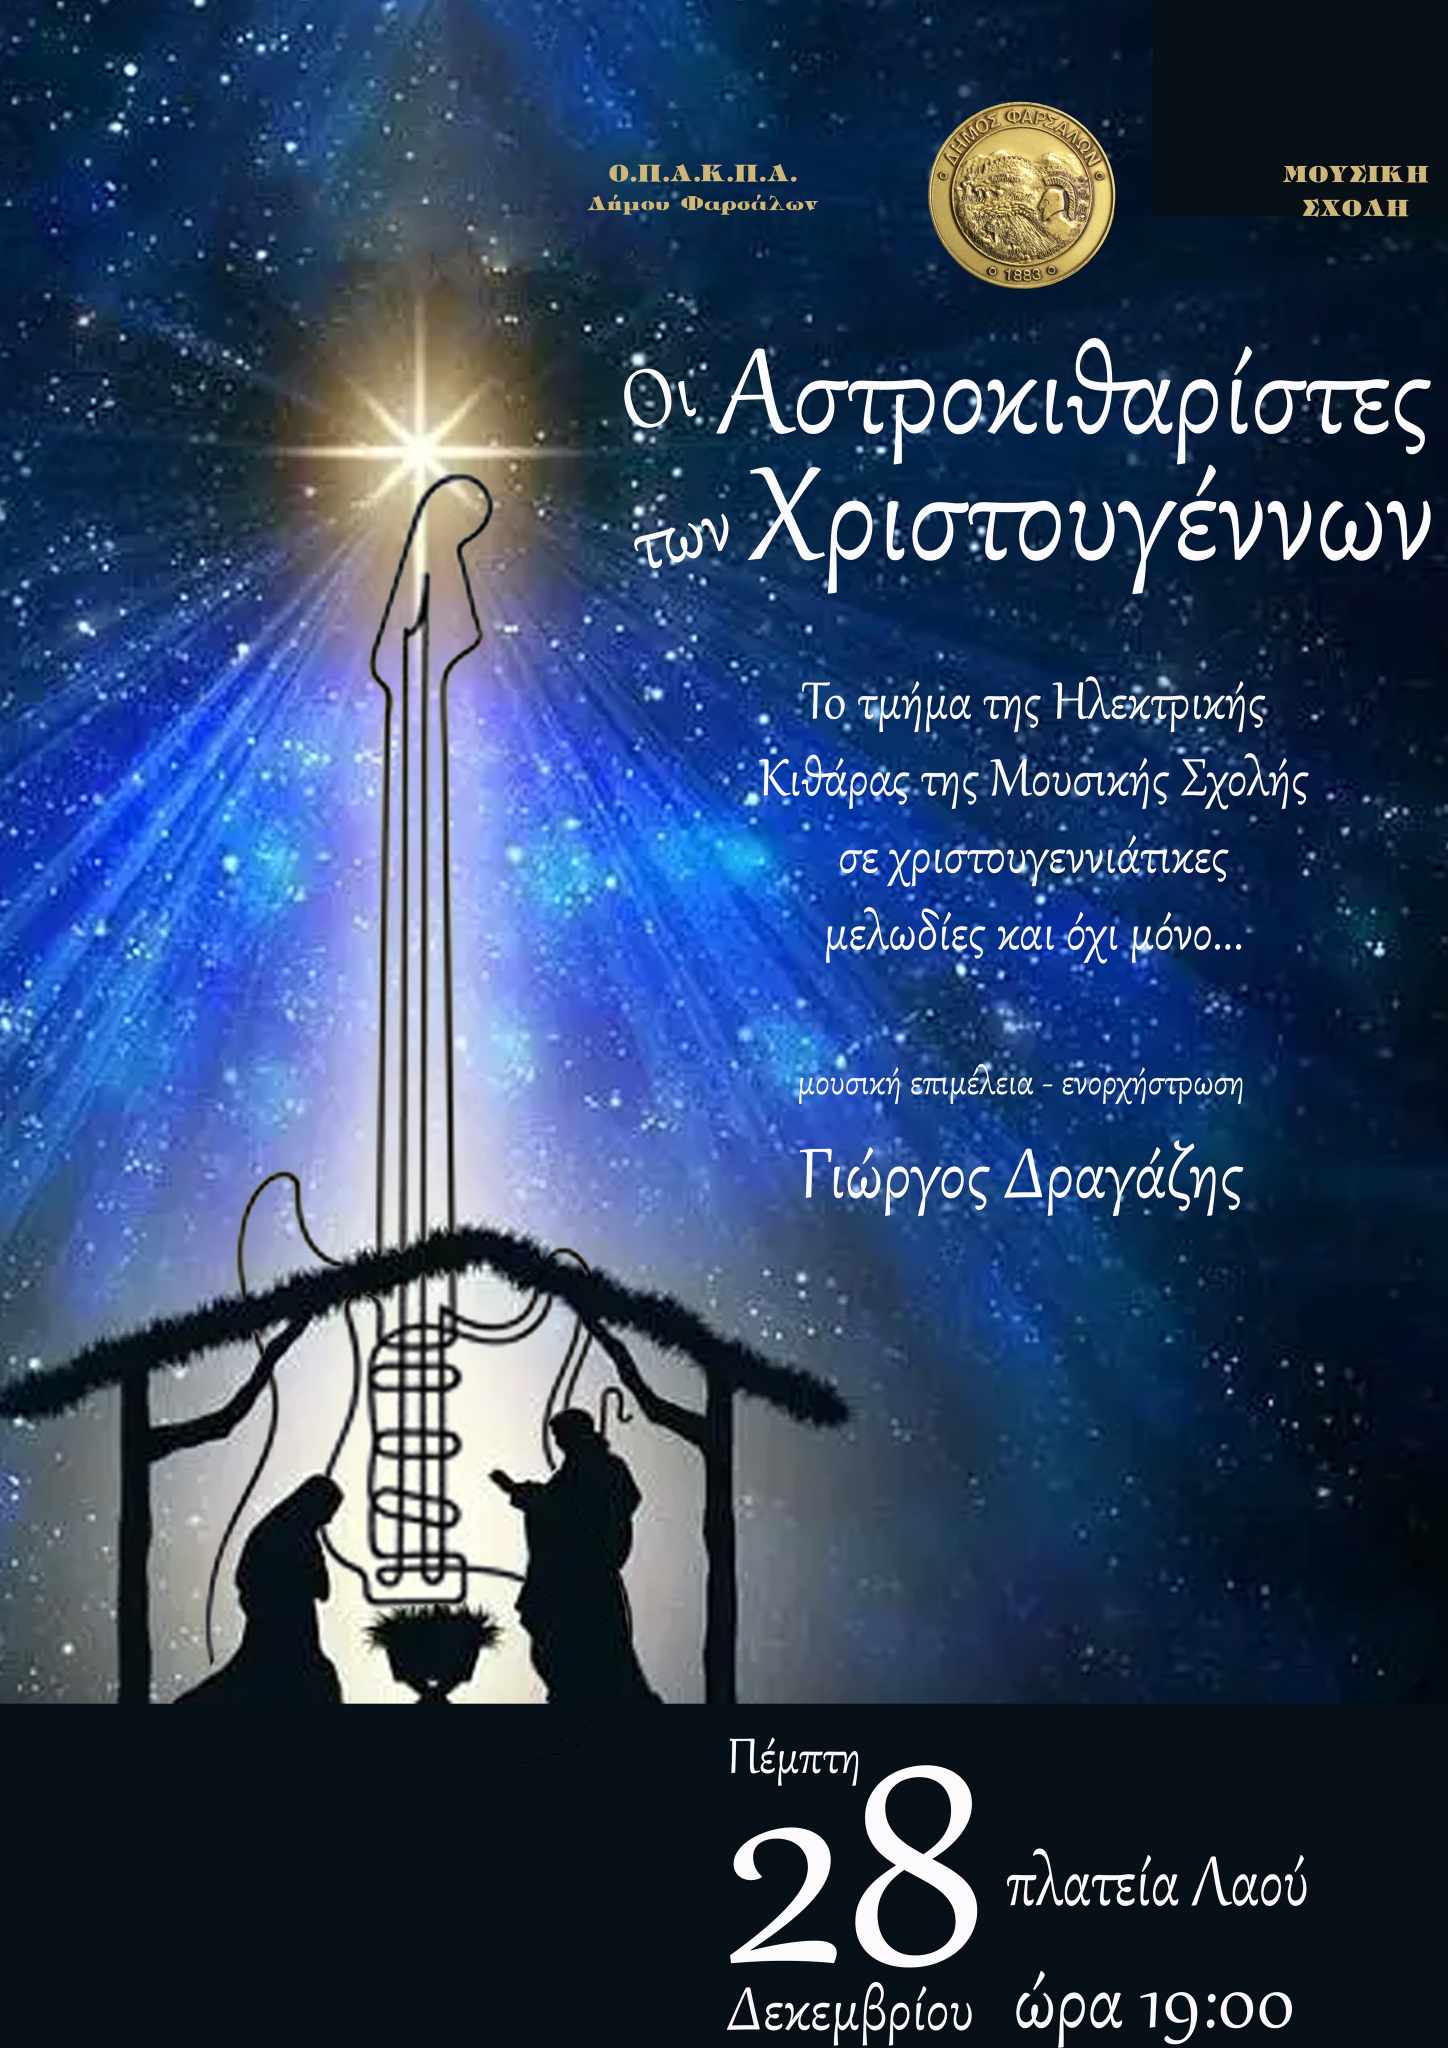 "Οι Αστροκιθαρίστες των Χριστουγέννων" στα Φάρσαλα 